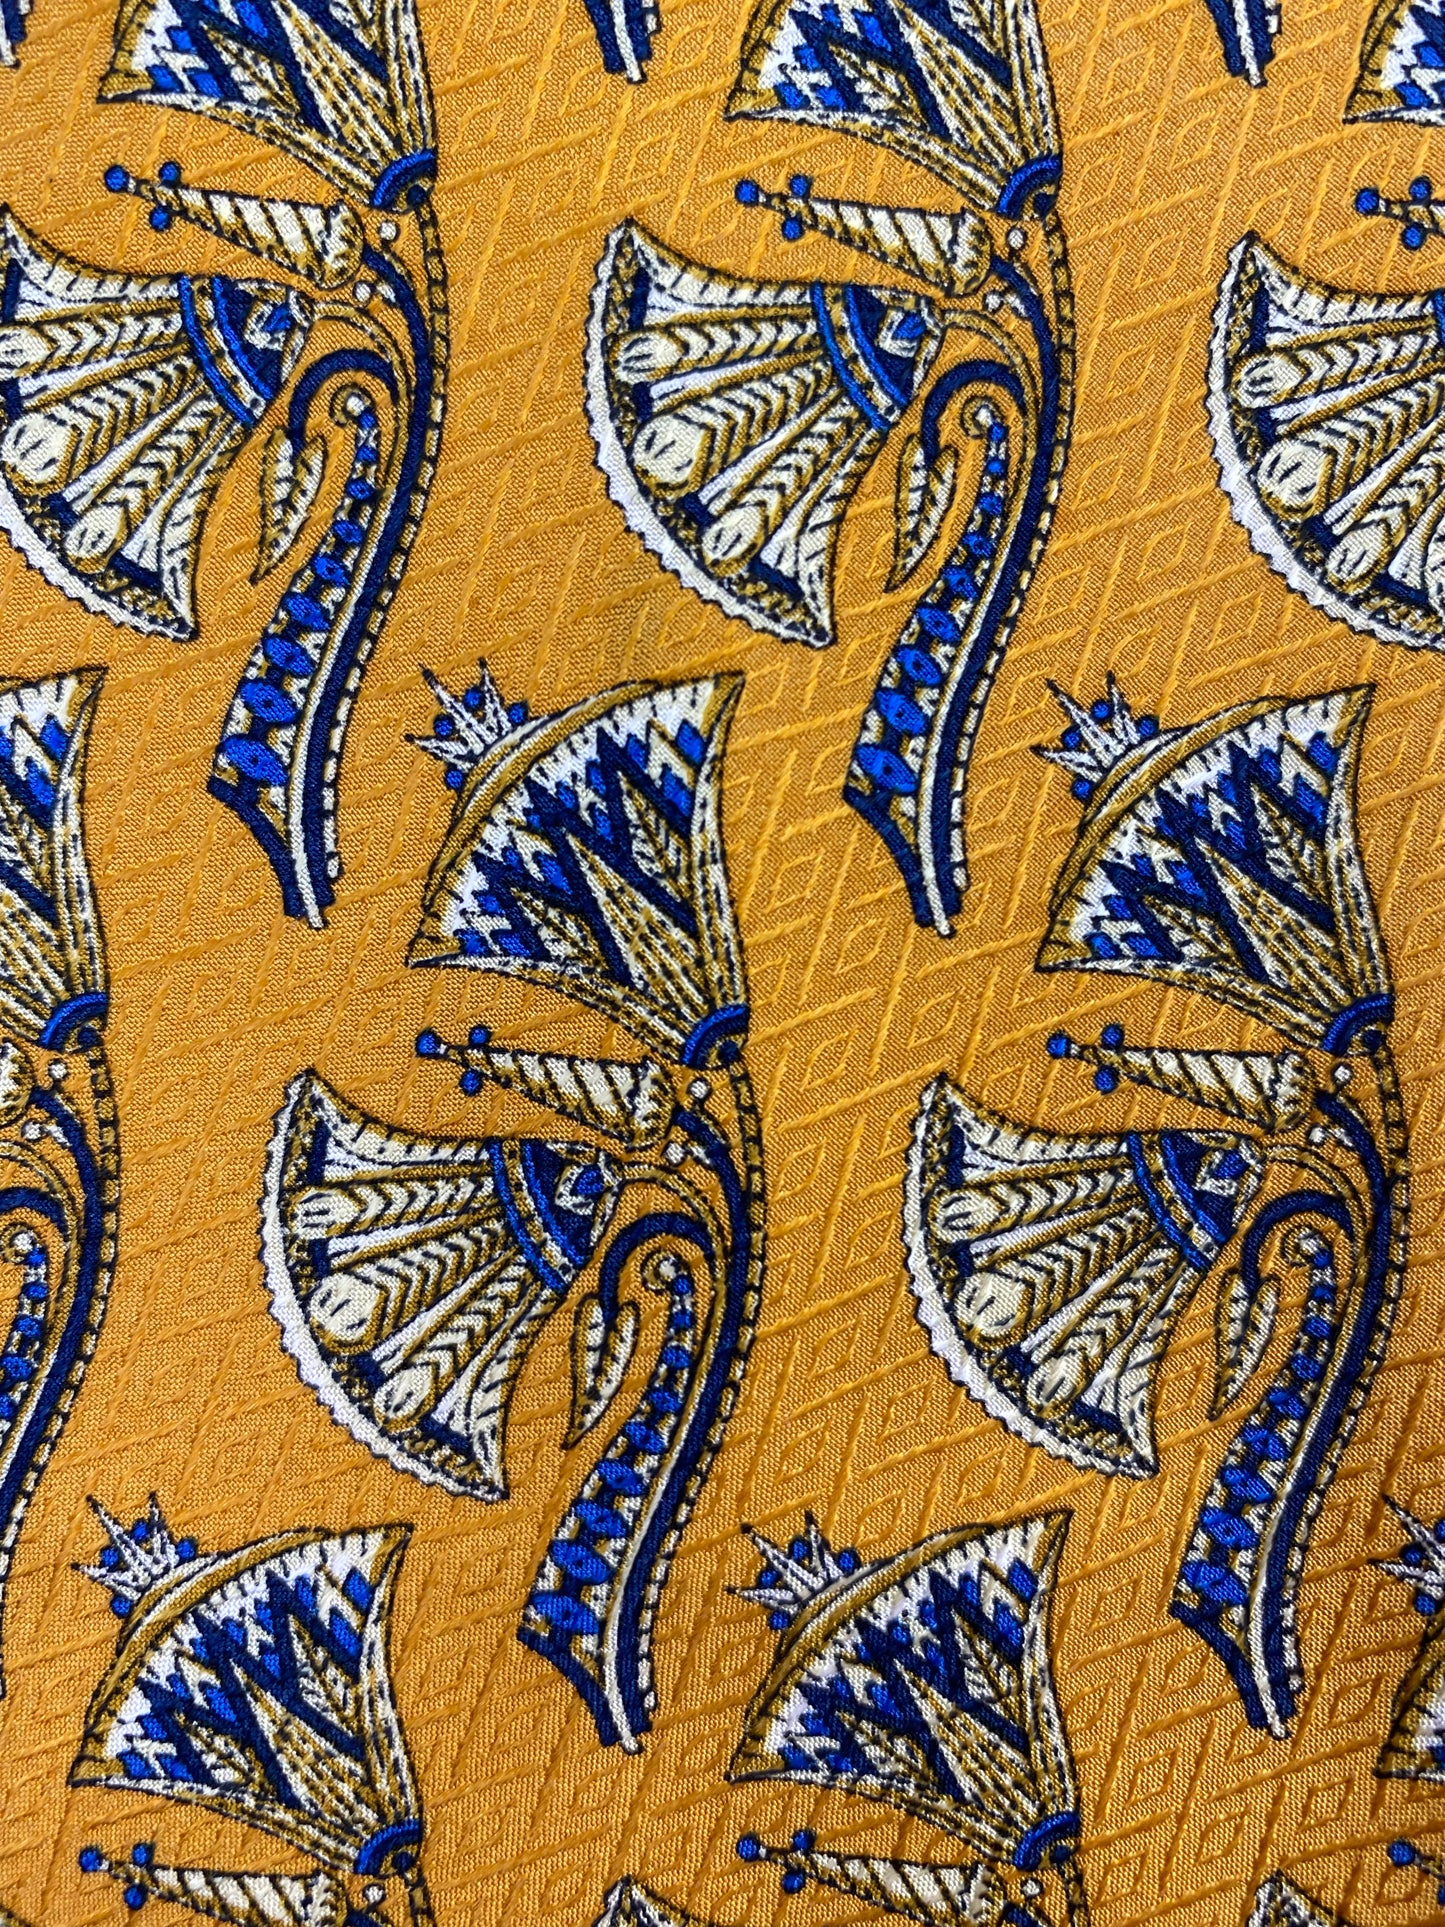 Close-up of: 90s Deadstock Silk Necktie, Men's Vintage Gold Blue Oriental Pattern Tie, NOS